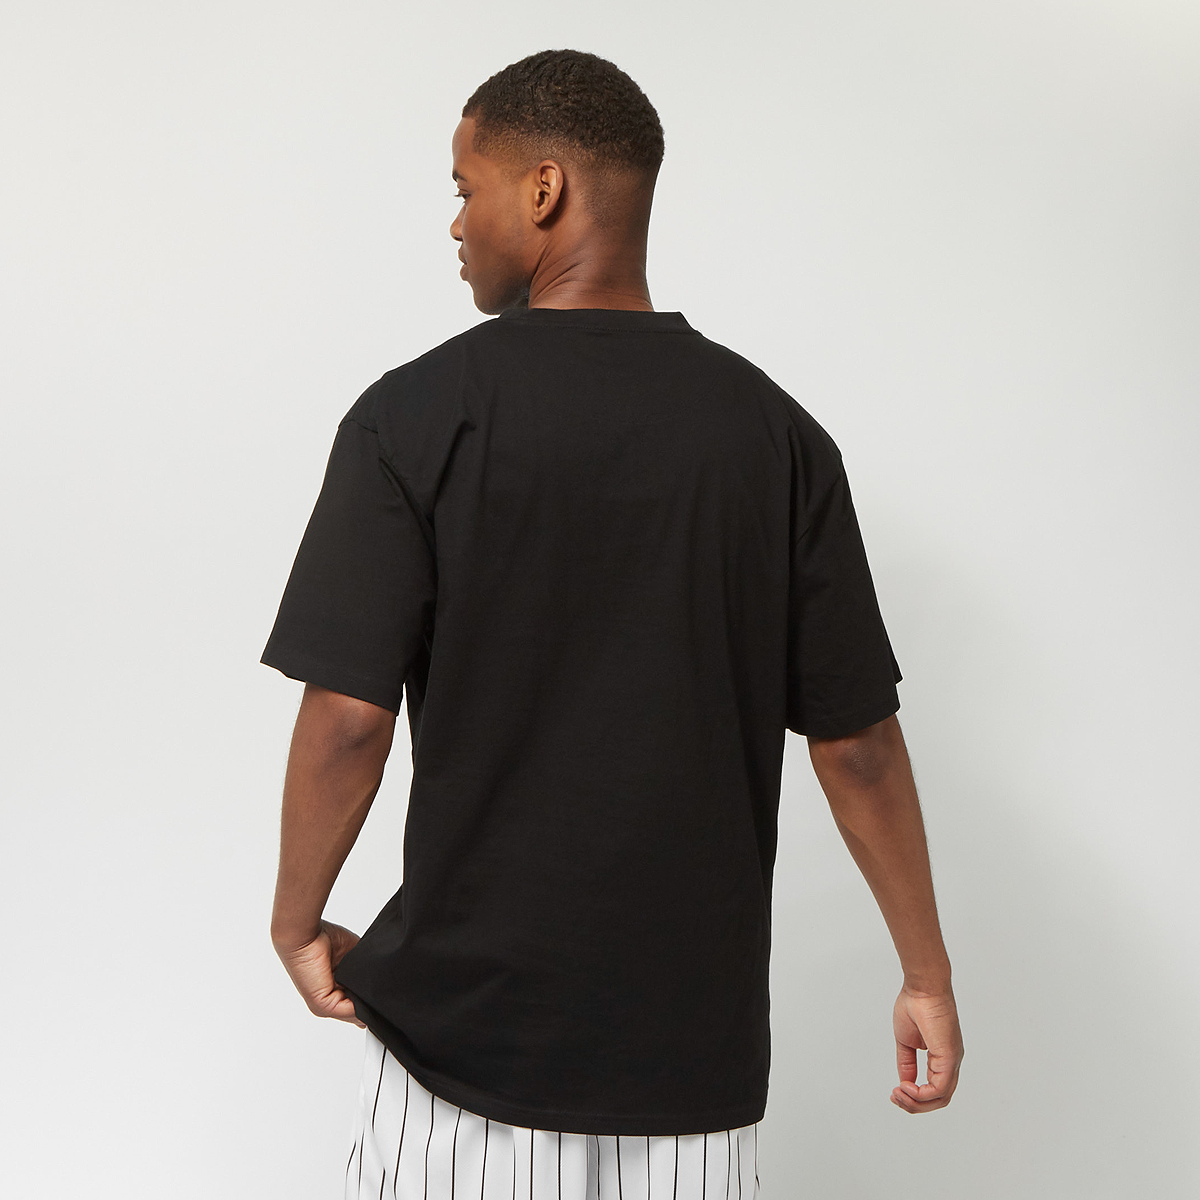 Karl Kani Small Signature Nyc Print Tee T-shirts Kleding Black maat: XS beschikbare maaten:XS S M L XL XXL